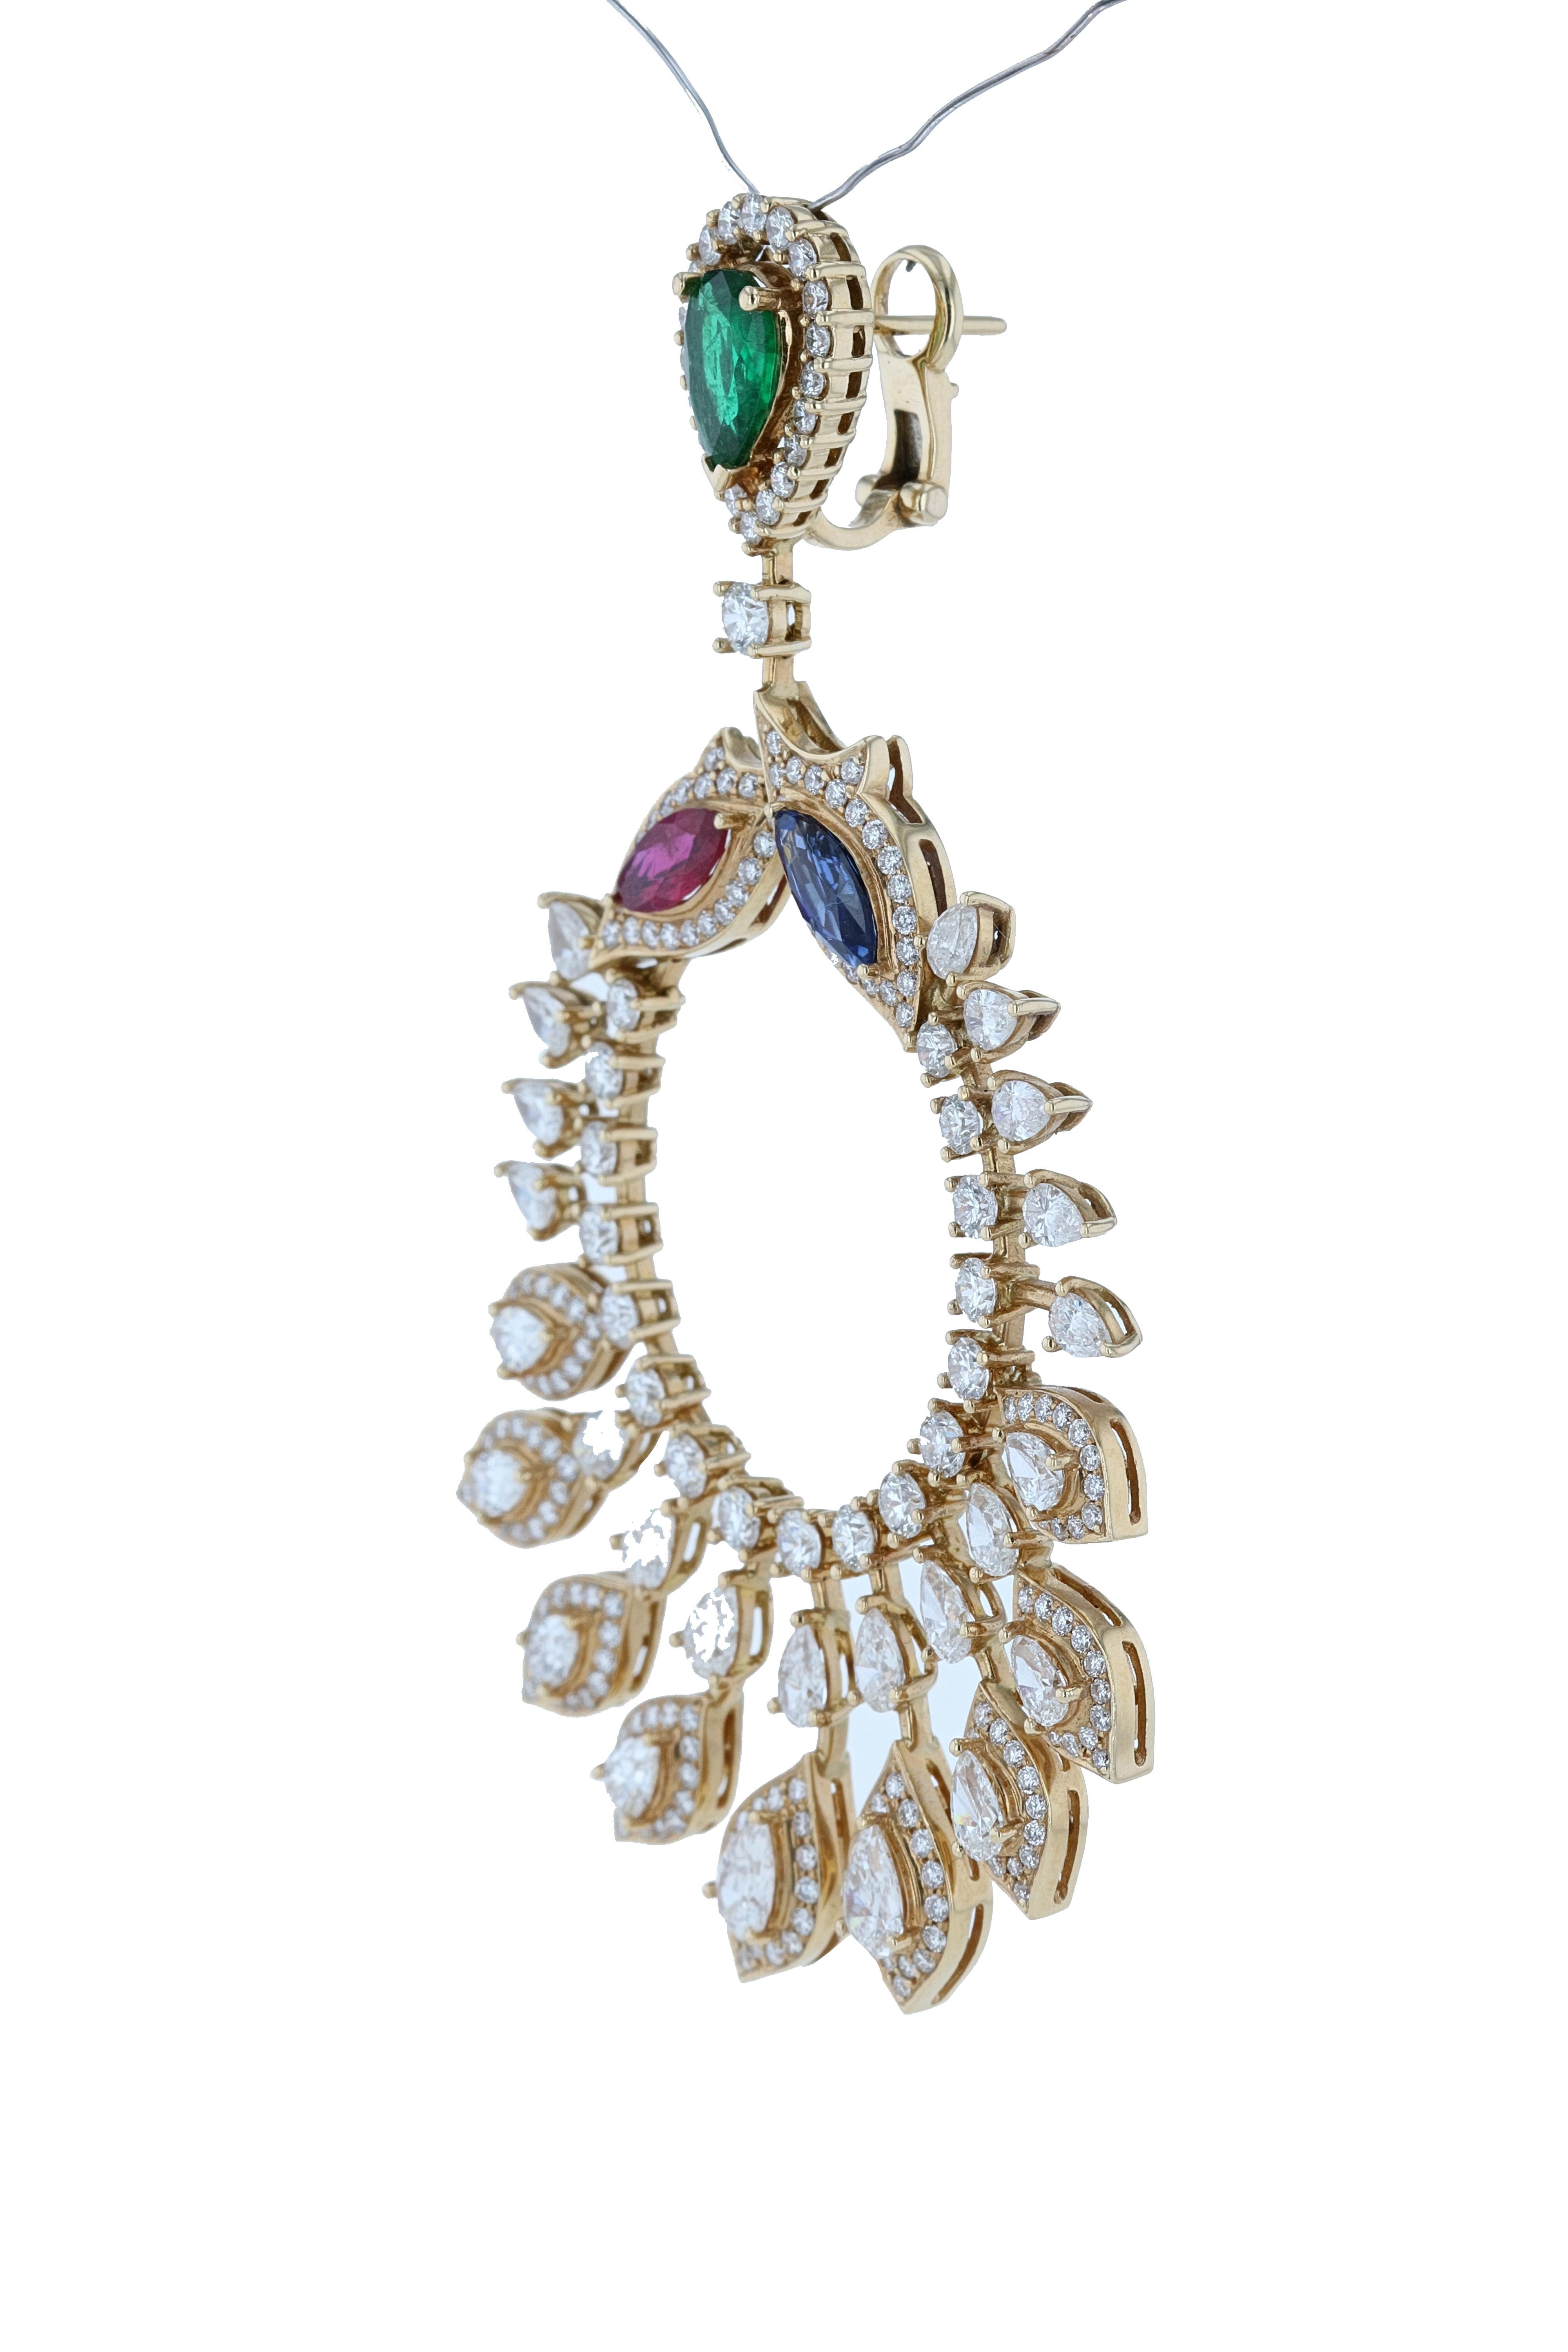 Pear Cut Amwaj Jewelry Emerald, Sapphire and Ruby Chandelier Earrings in 18 Karat Gold For Sale